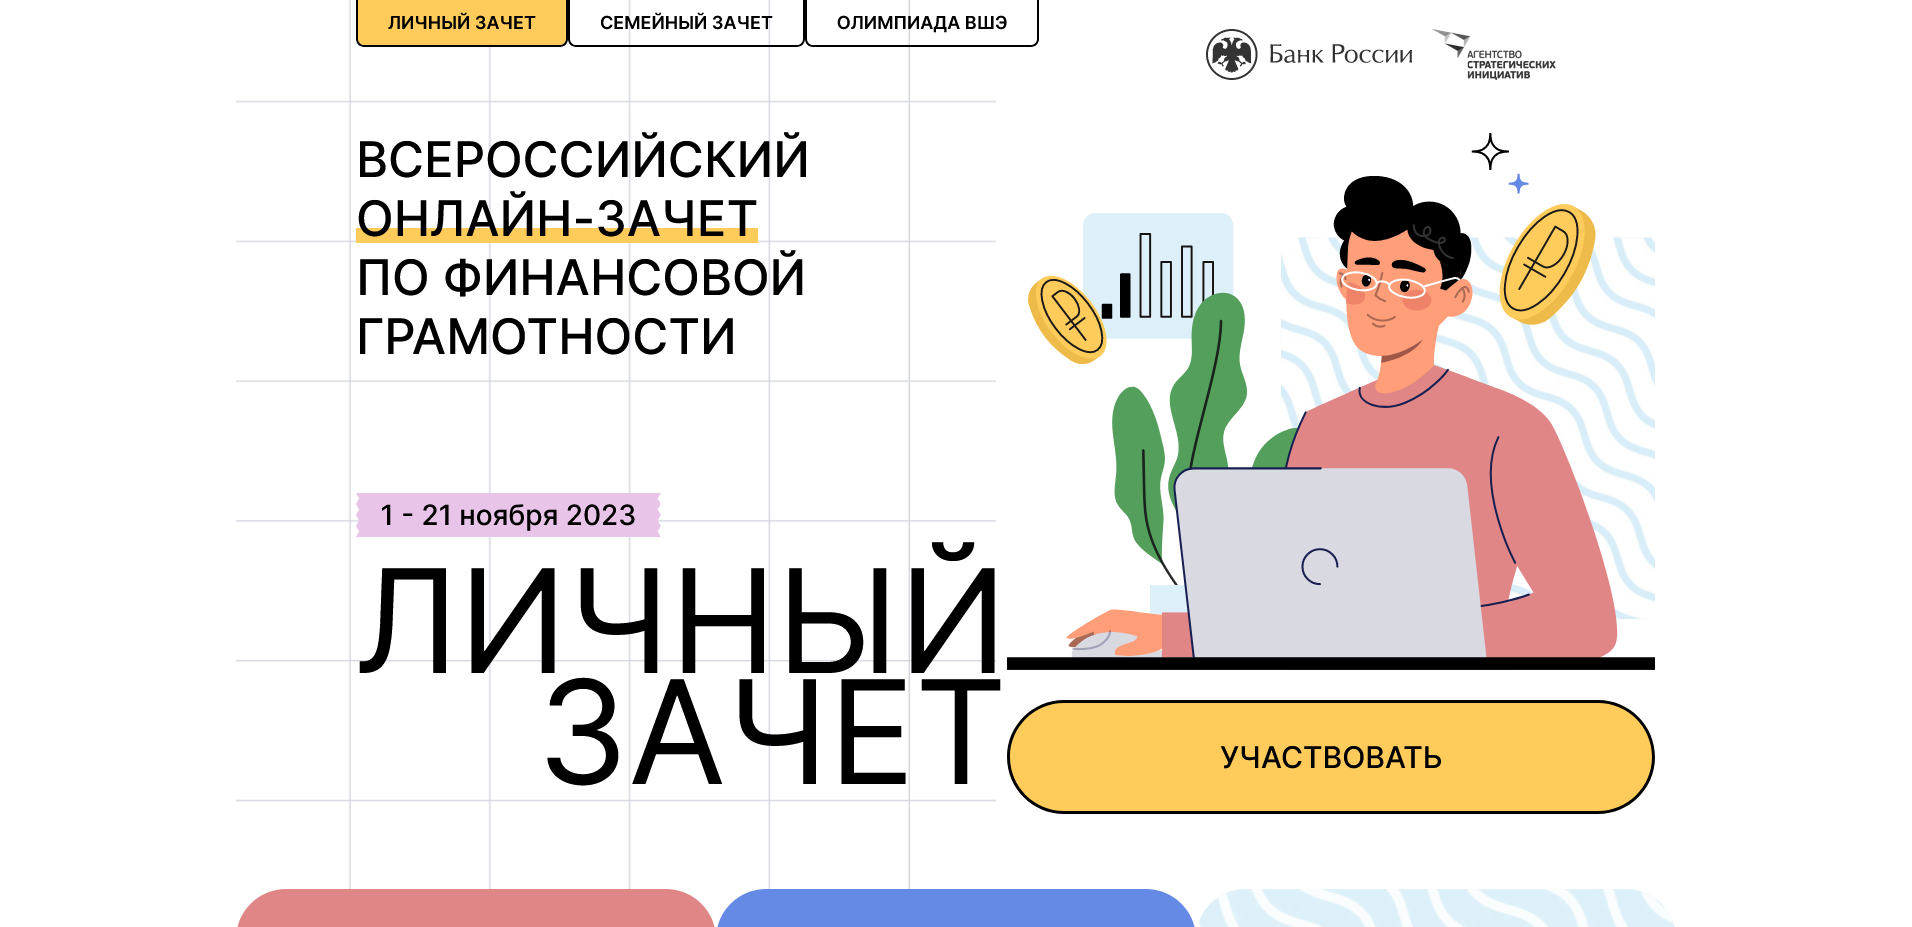 Всероссийский онлайн-зачёт по финансовой грамотности.